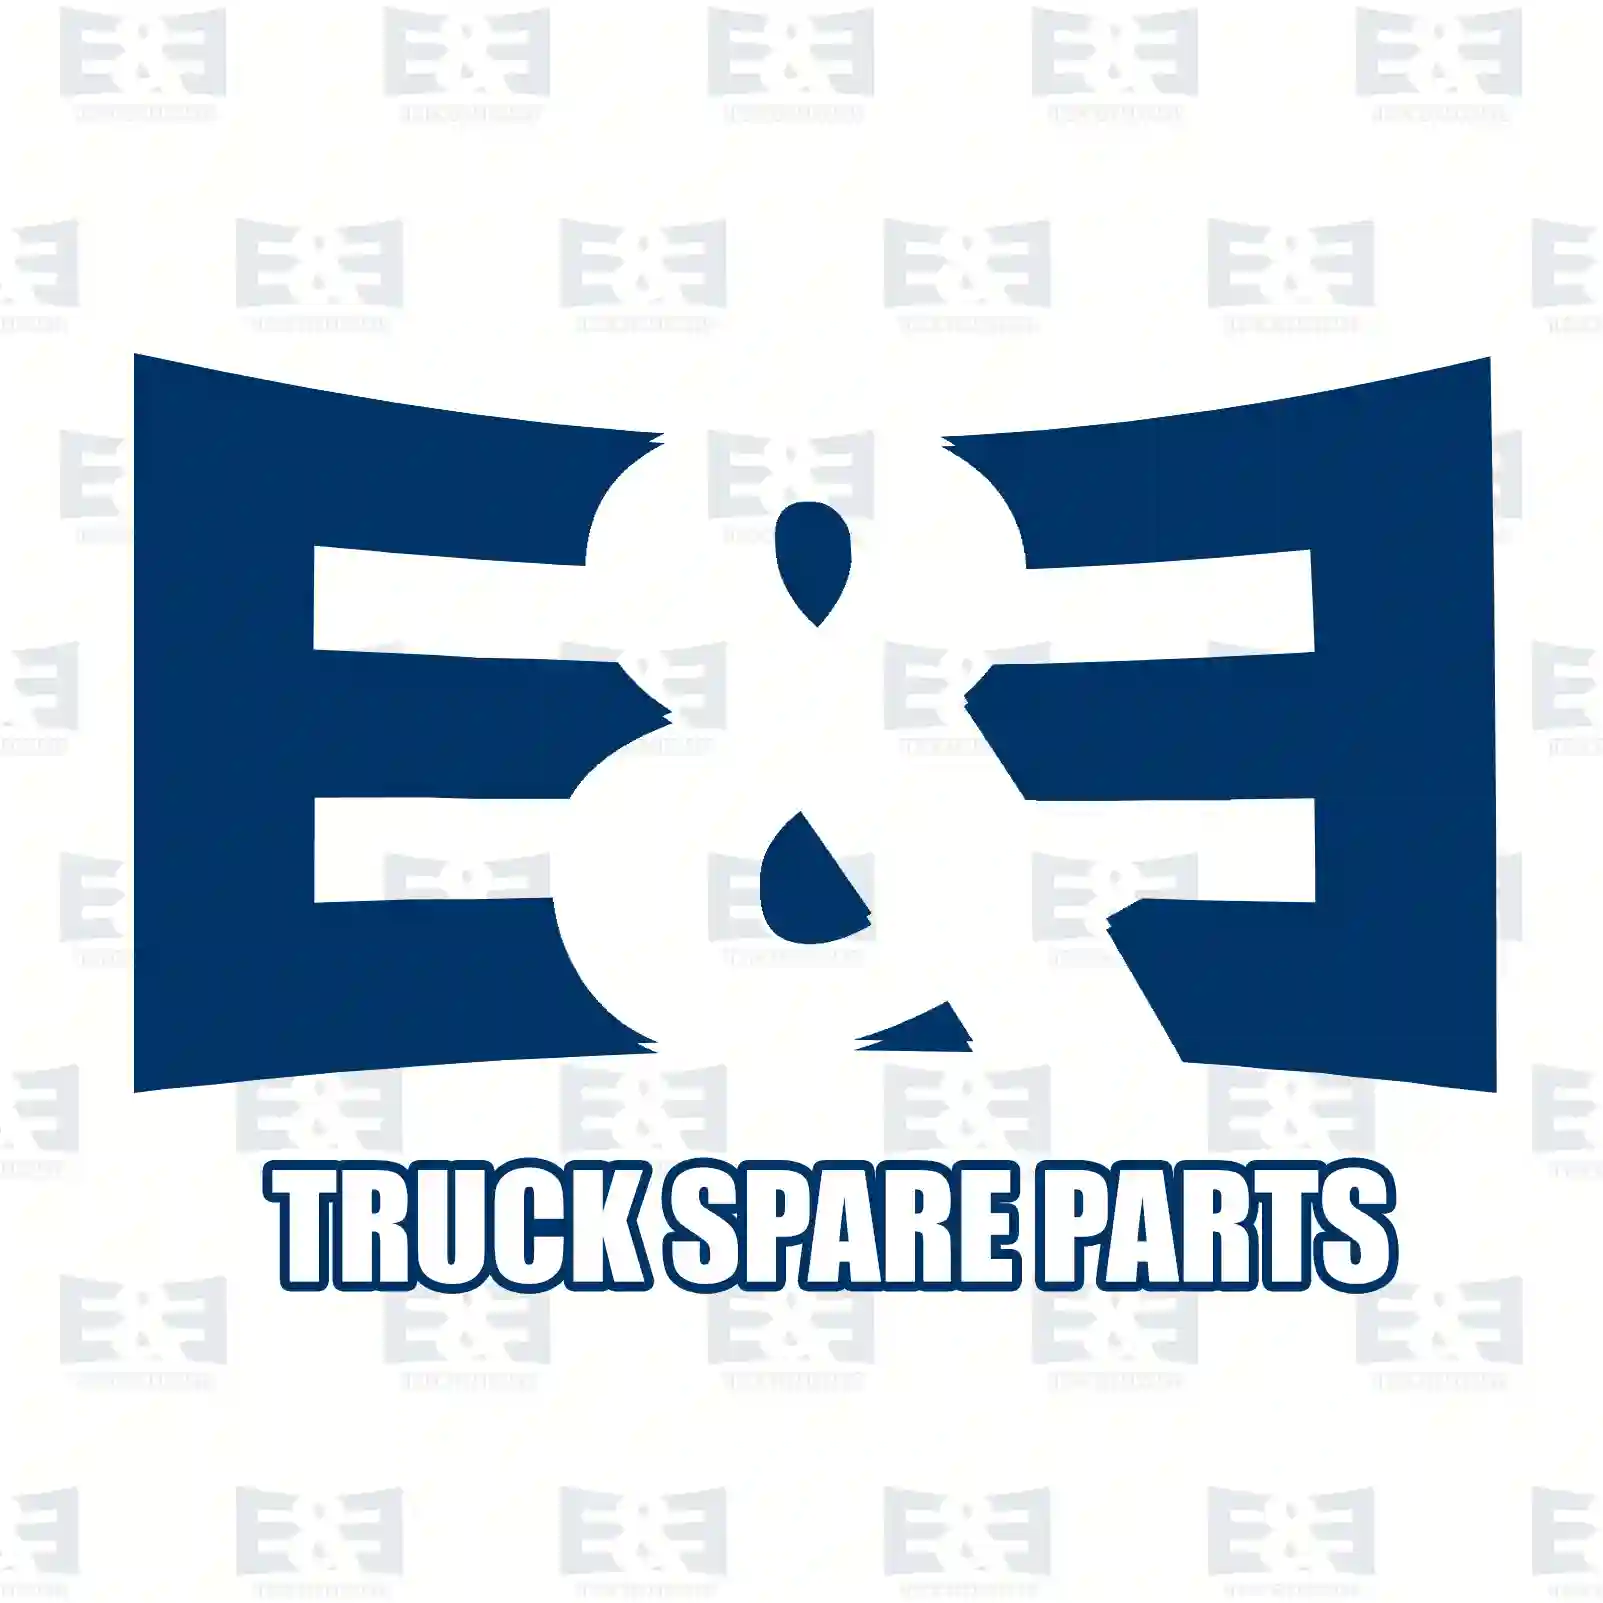 Shock absorber, 2E2283872, 04434813, 04439223, 71713670, 520193, 5202CW, 5202JC, 520313, 520317, 04434813, 07534624, 07569730, 71712527, 7569730, 520193, 5202CW, 5202JC, 520313, 520317 ||  2E2283872 E&E Truck Spare Parts | Truck Spare Parts, Auotomotive Spare Parts Shock absorber, 2E2283872, 04434813, 04439223, 71713670, 520193, 5202CW, 5202JC, 520313, 520317, 04434813, 07534624, 07569730, 71712527, 7569730, 520193, 5202CW, 5202JC, 520313, 520317 ||  2E2283872 E&E Truck Spare Parts | Truck Spare Parts, Auotomotive Spare Parts